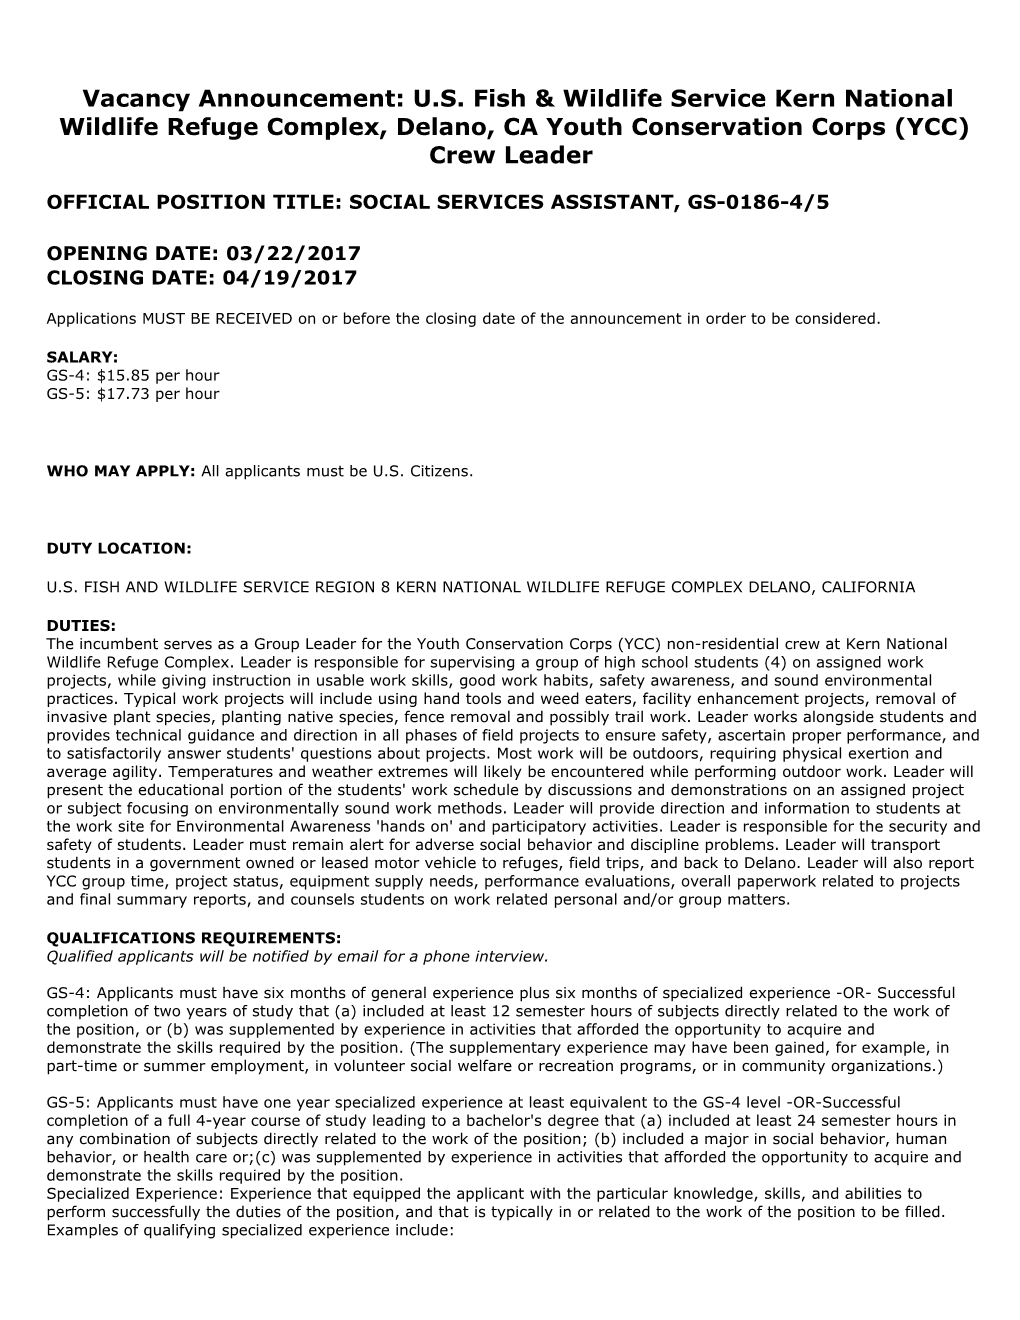 Official Position Title: Social Services Assistant, Gs-0186-4/5